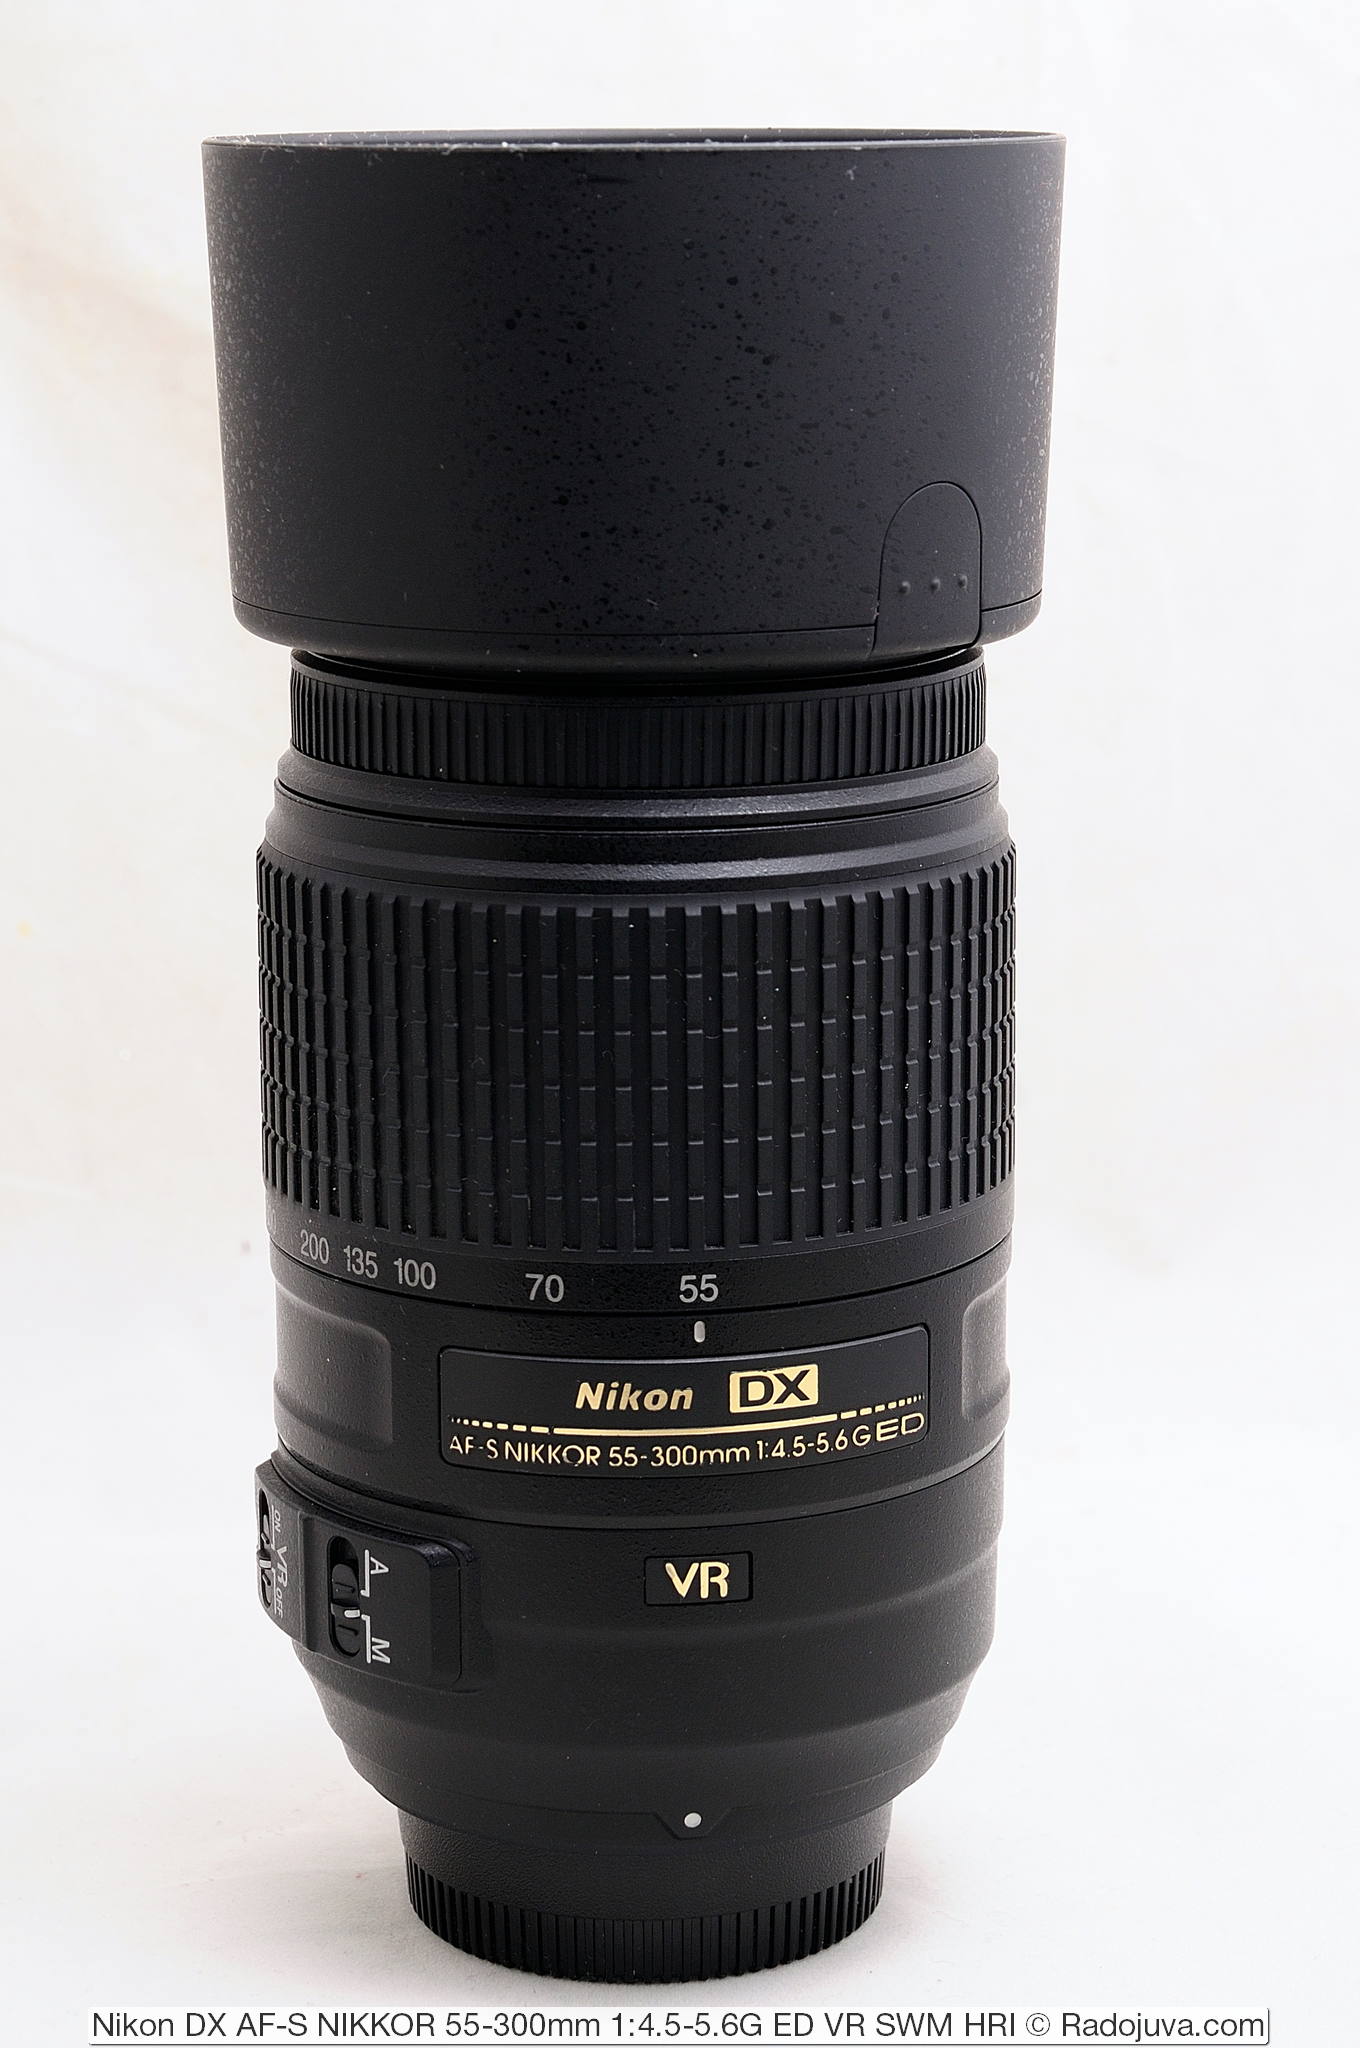 Review Nikon DX AF-S NIKKOR 55-300 mm 1: 4.5-5.6 G ED VR SWM HRI 